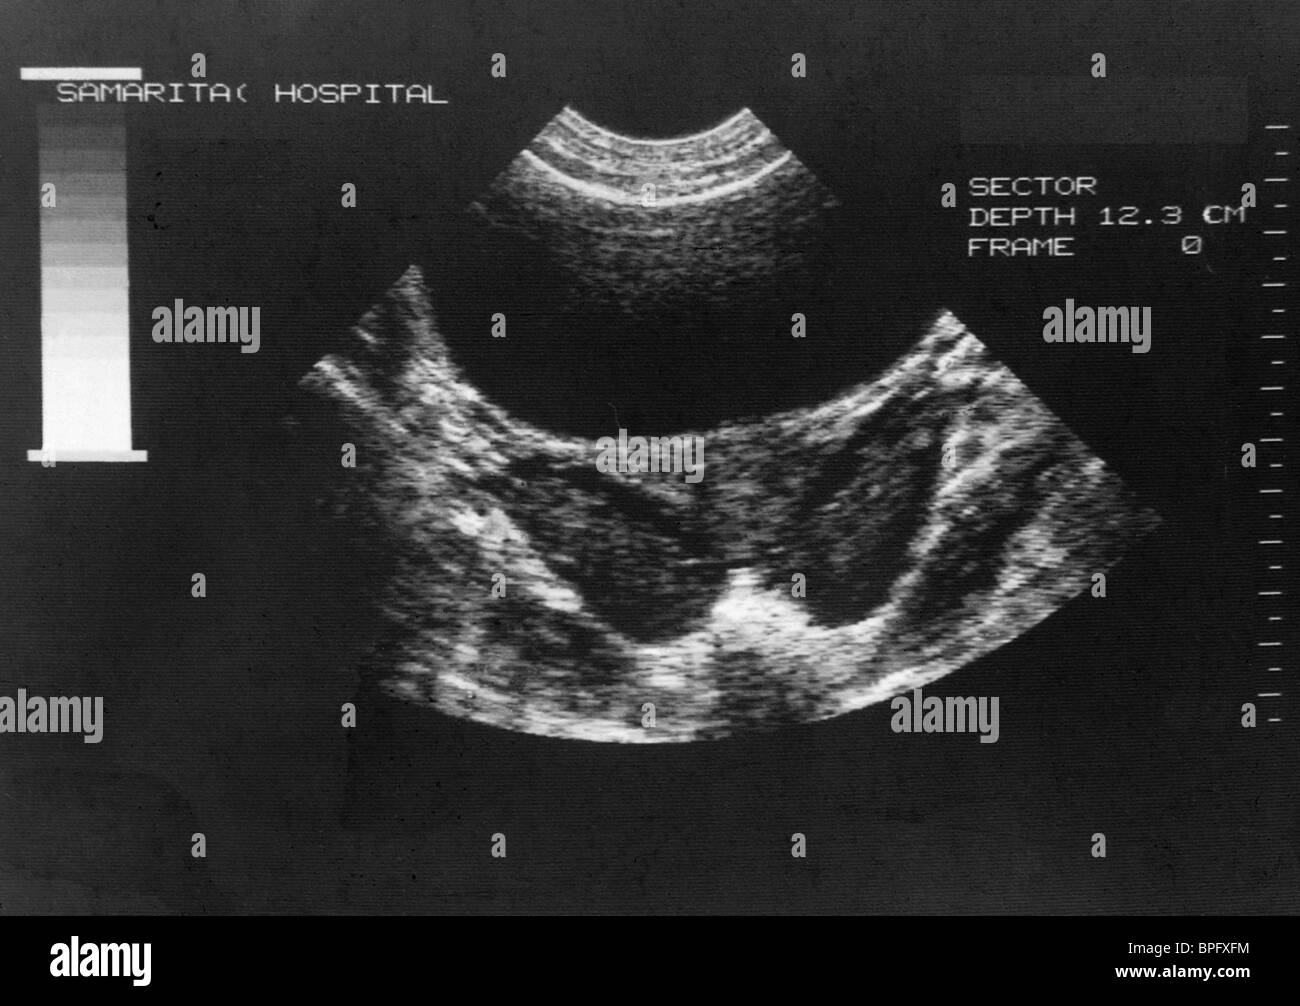 Pcos Ovary Ultrasound